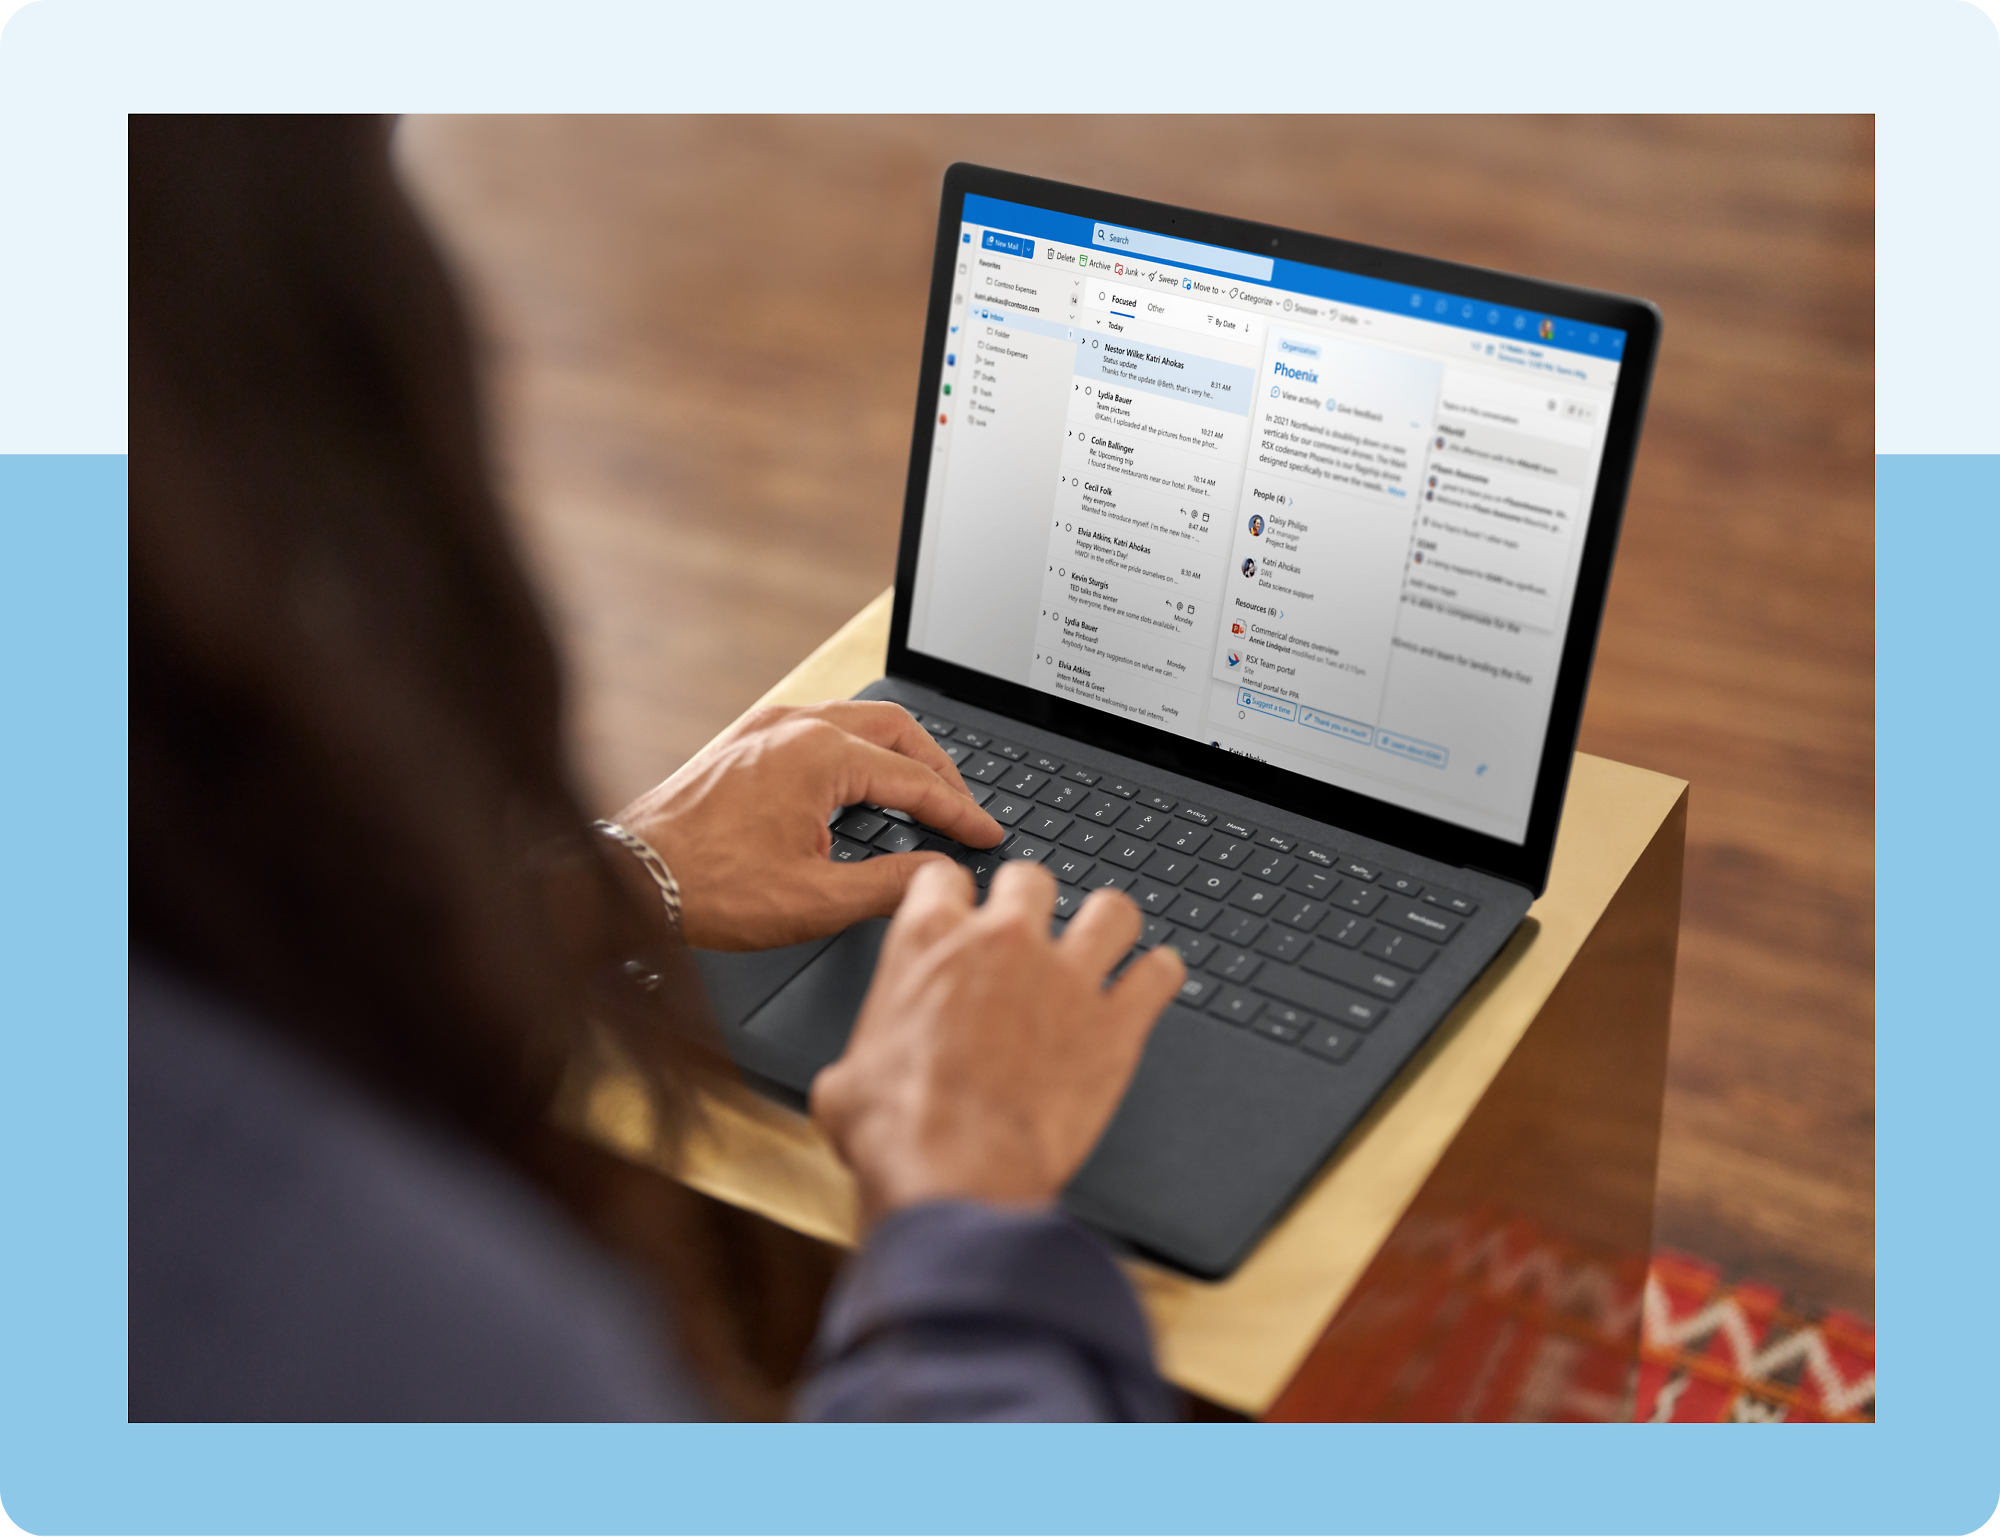 Una persona escribiendo en un equipo portátil que muestra la aplicación Outlook